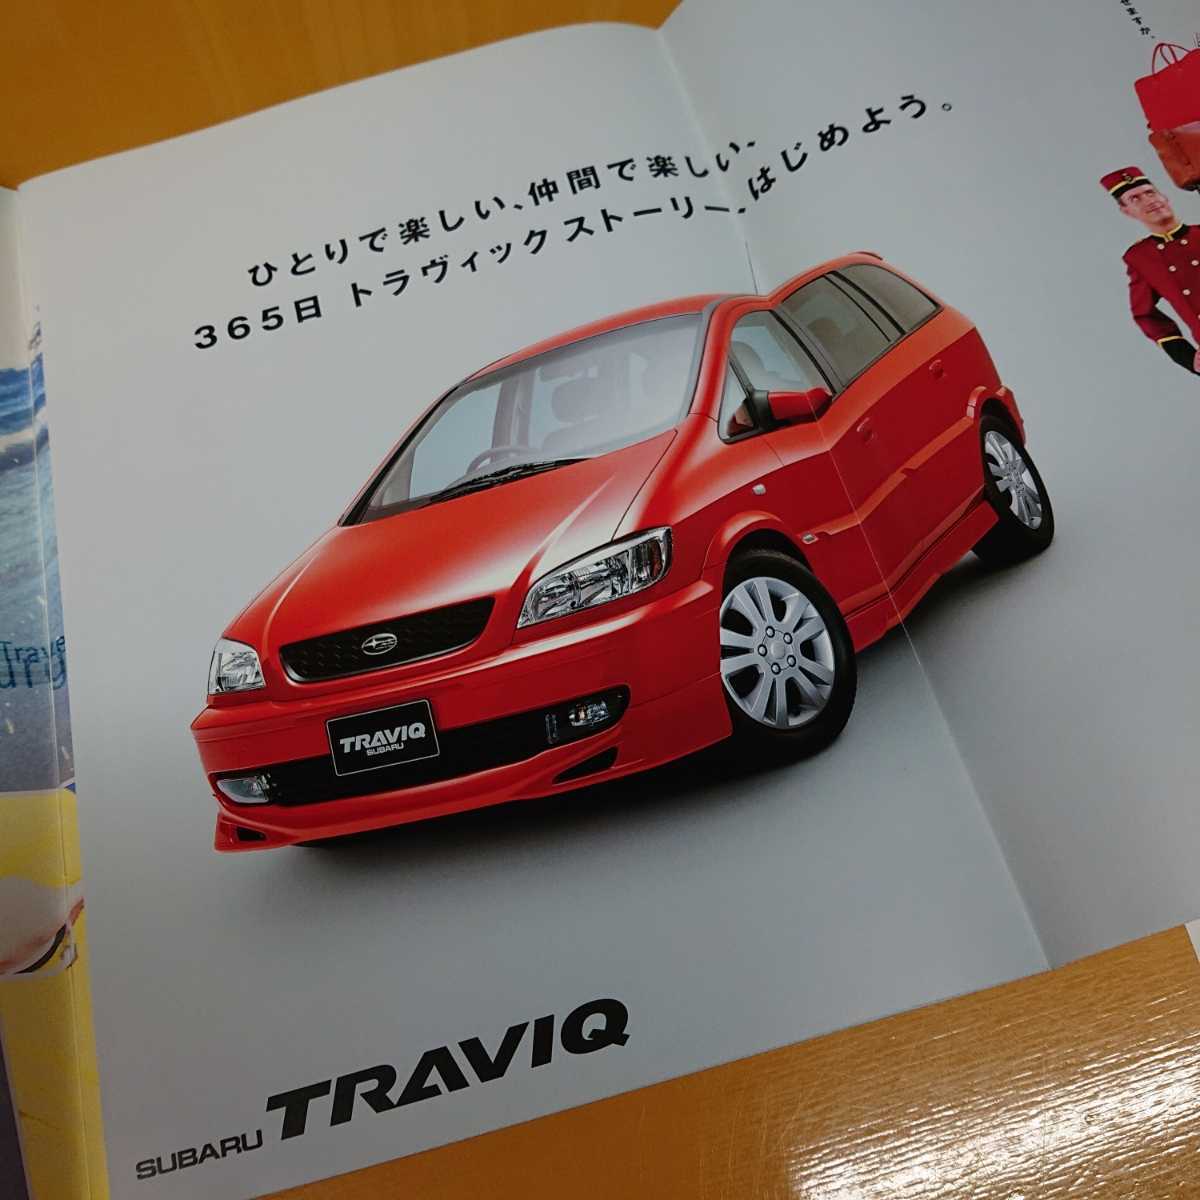 Paypayフリマ 絶版車 Subaru Traviq スバル トラヴィック カタログ 送料無料